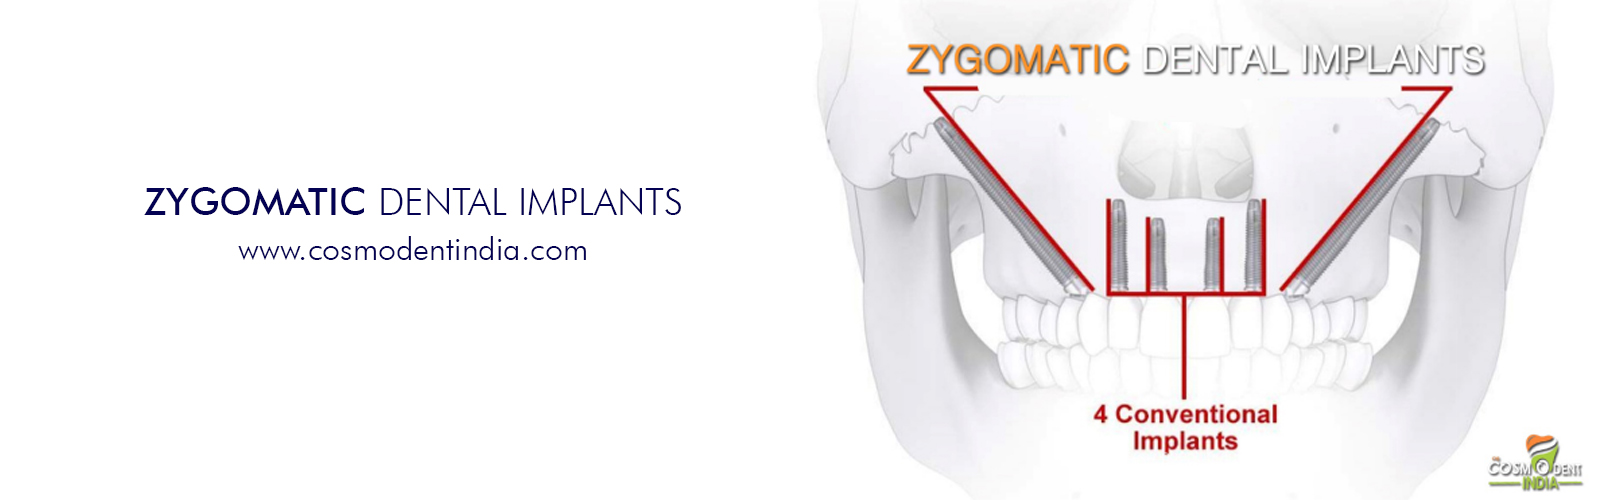 zygomatic-implants-in-india